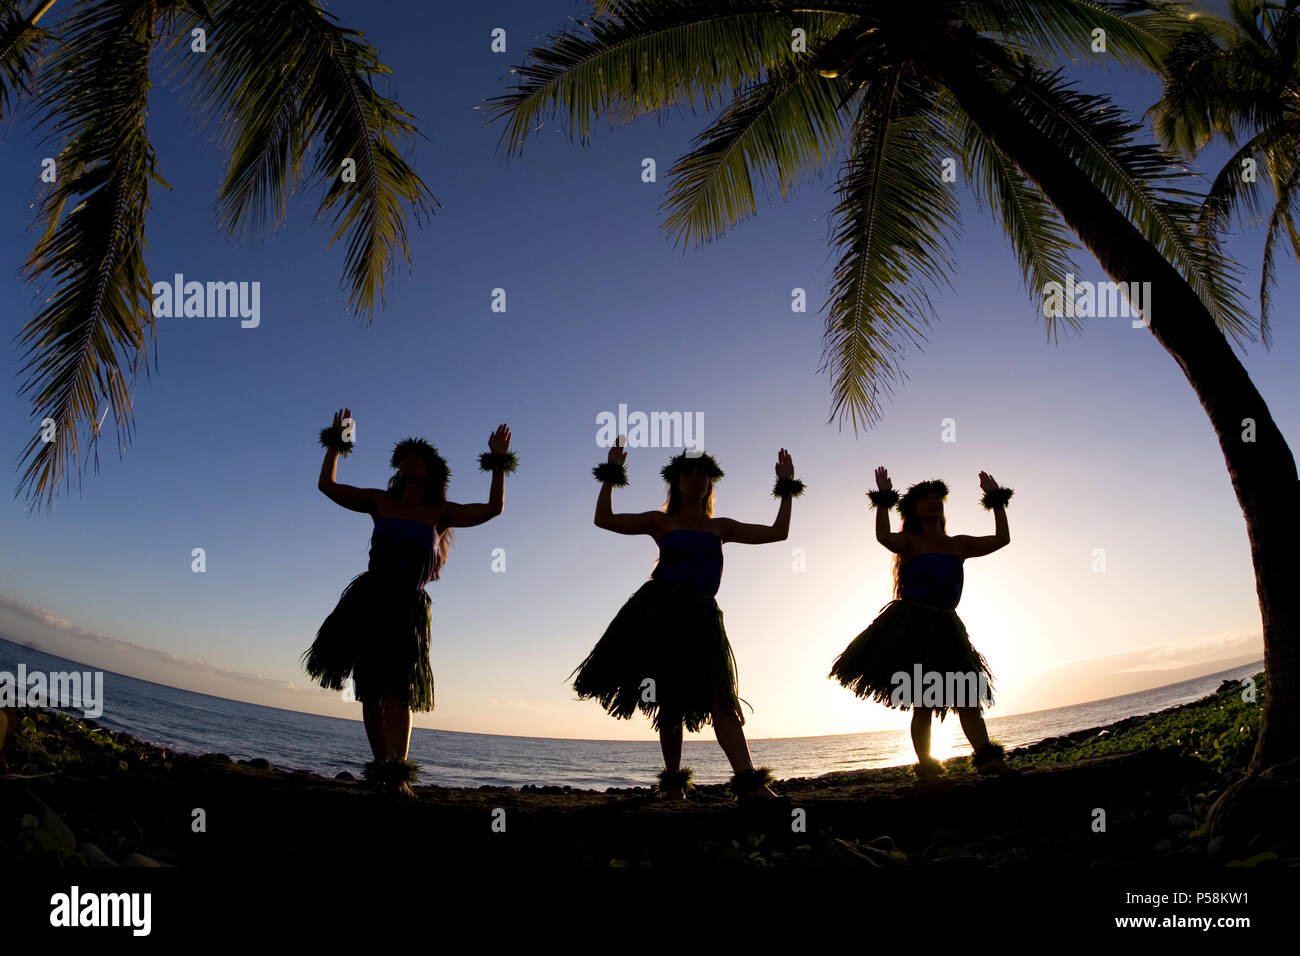 Three hula dancers at sunset at Olowalu, Maui, Hawaii. Stock Photo